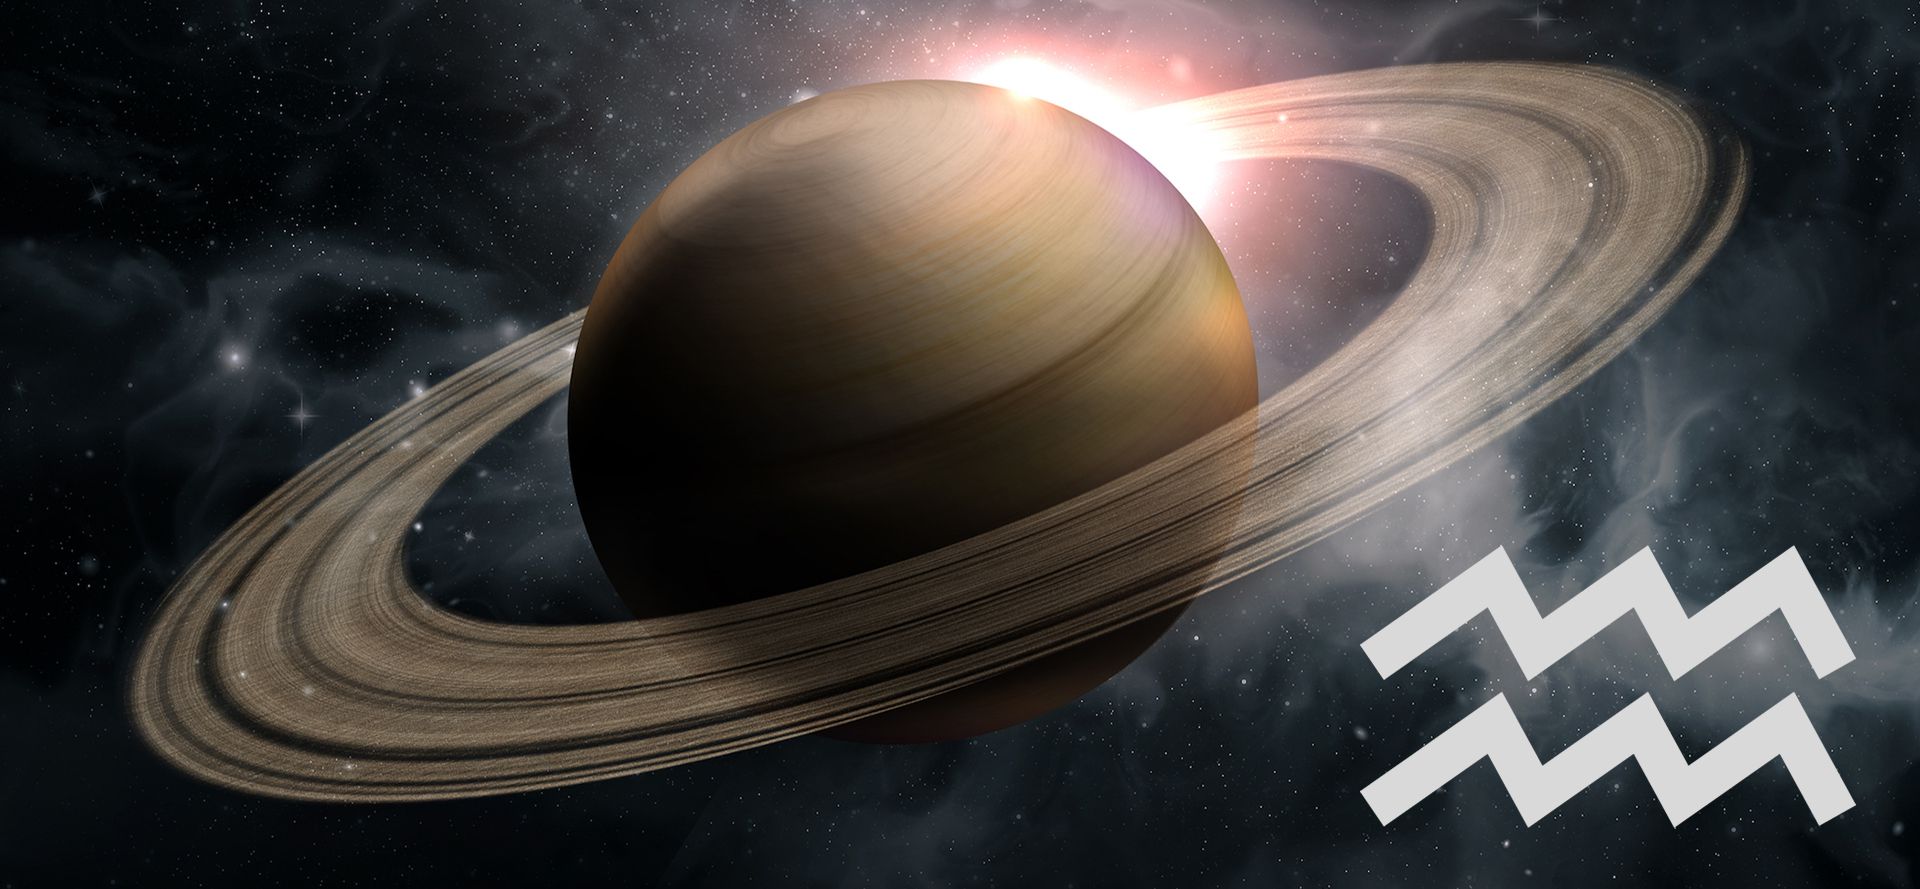 Saturn and Aquarius sign.